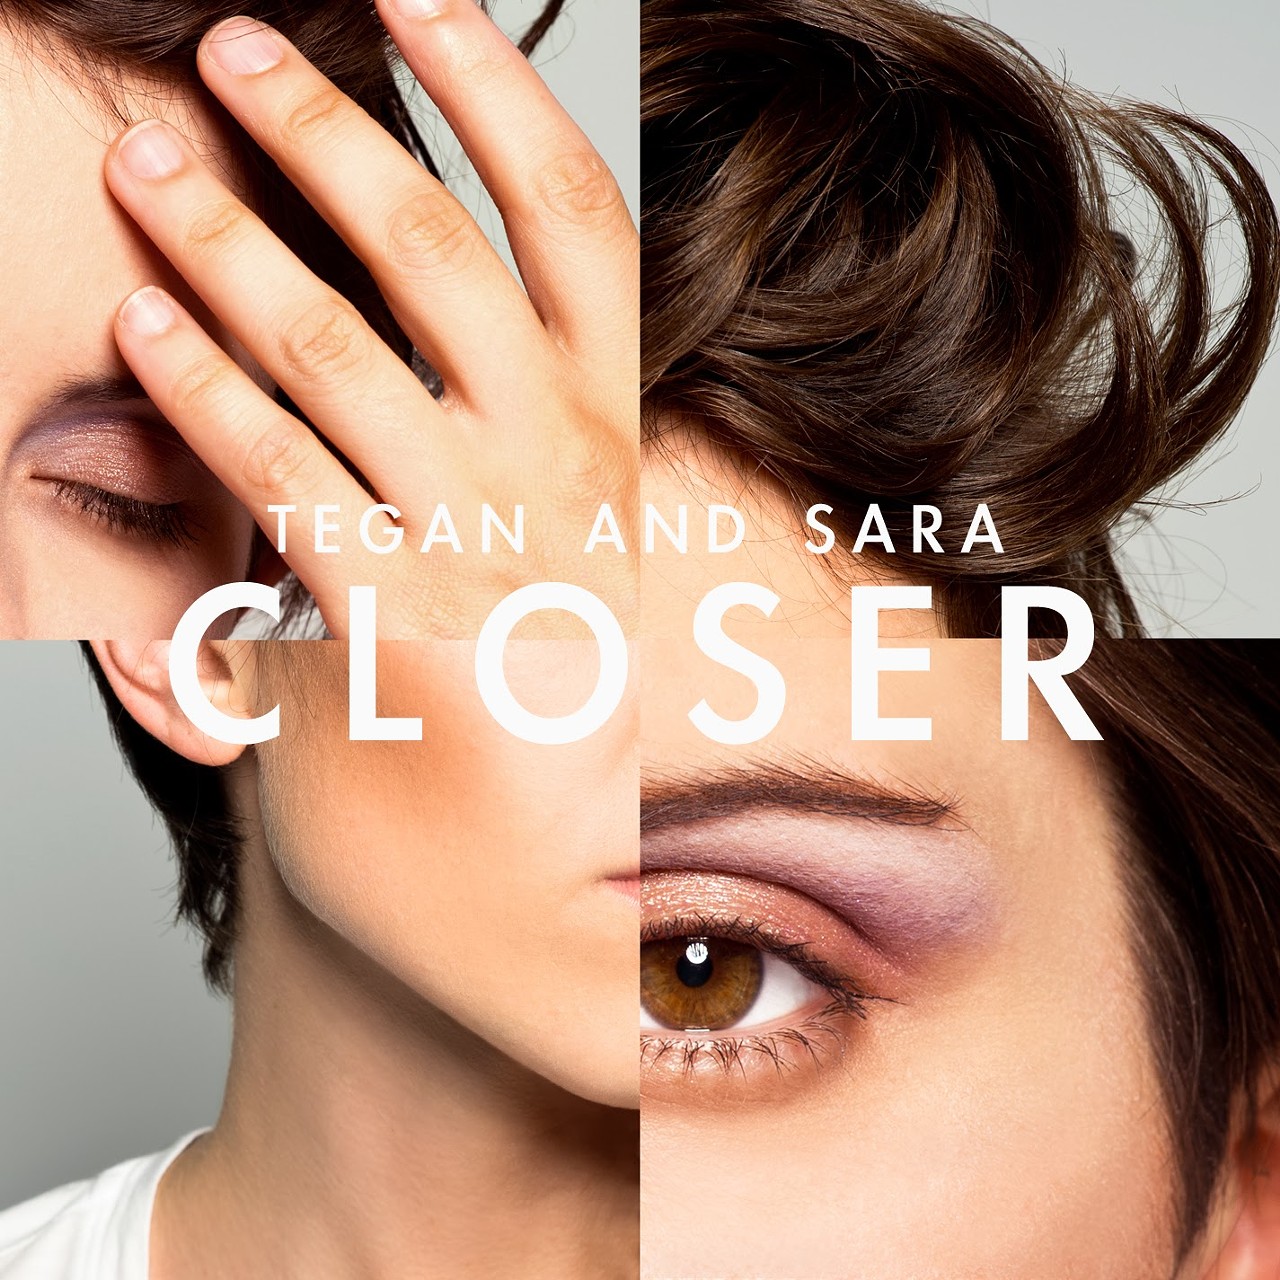 13. Tegan and Sara, "Closer"	(26 Votes)